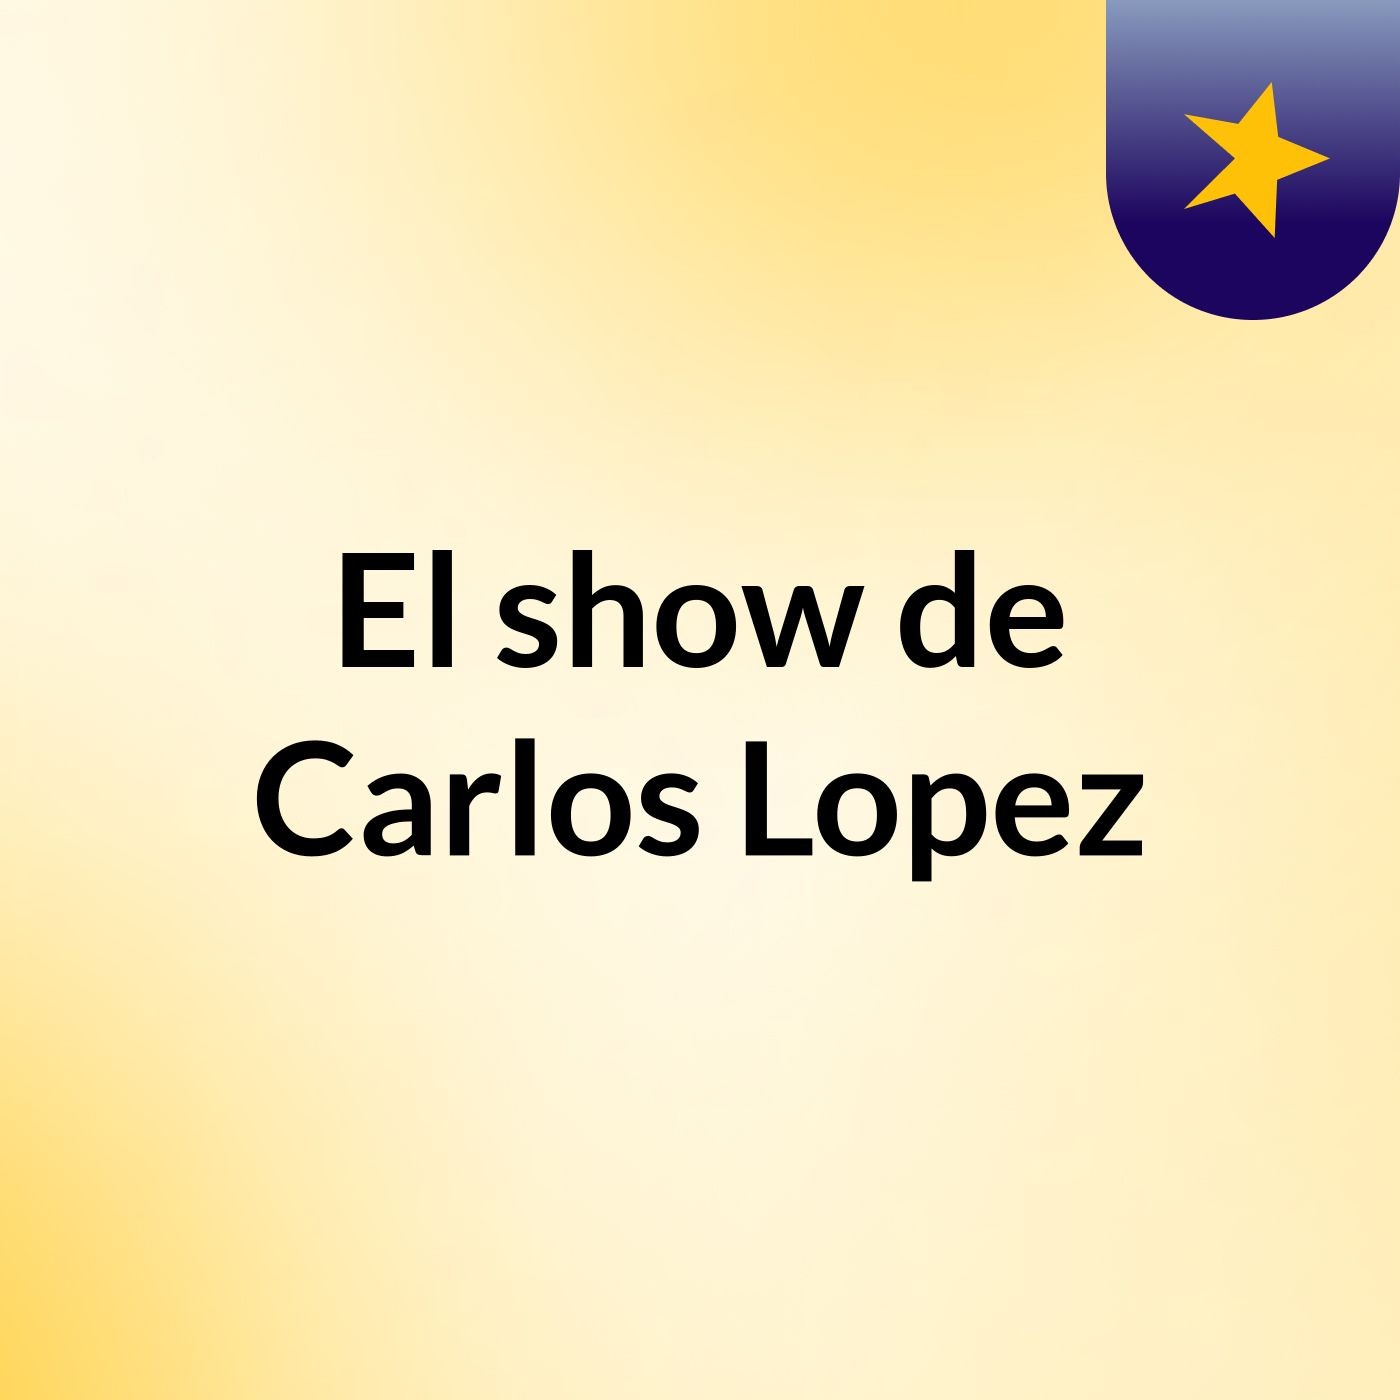 El show de Carlos Lopez